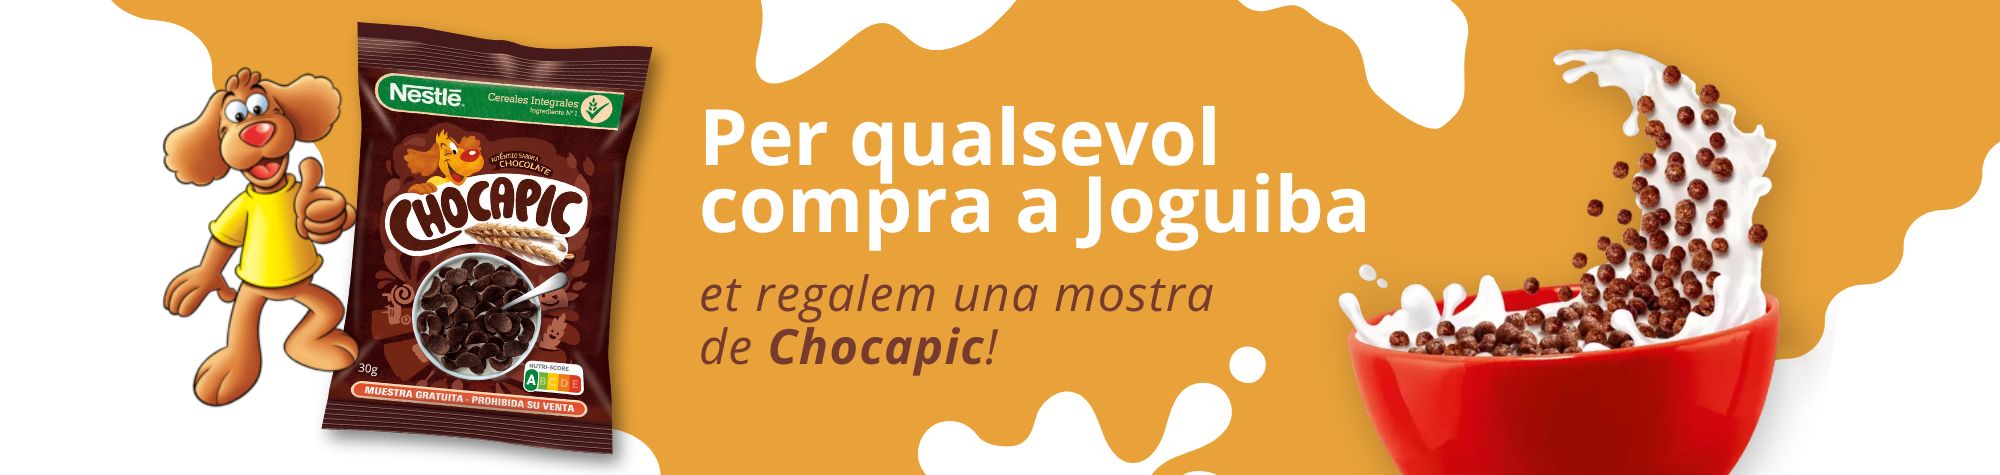 Promoció Chocapic